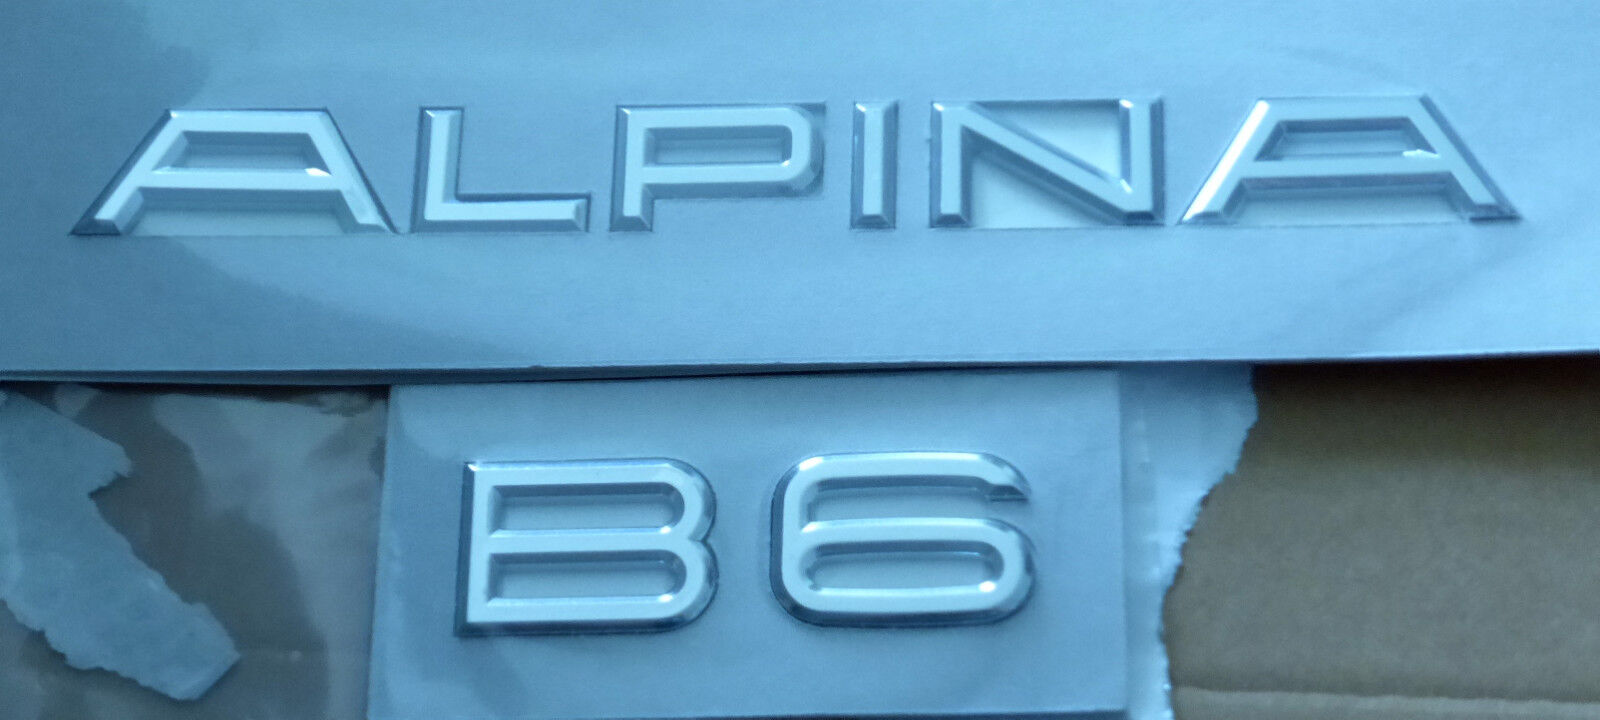 BMW OEM F06 F12 F13 Genuine Alpina B6 Trunk Boot Emblems Badges Brand New